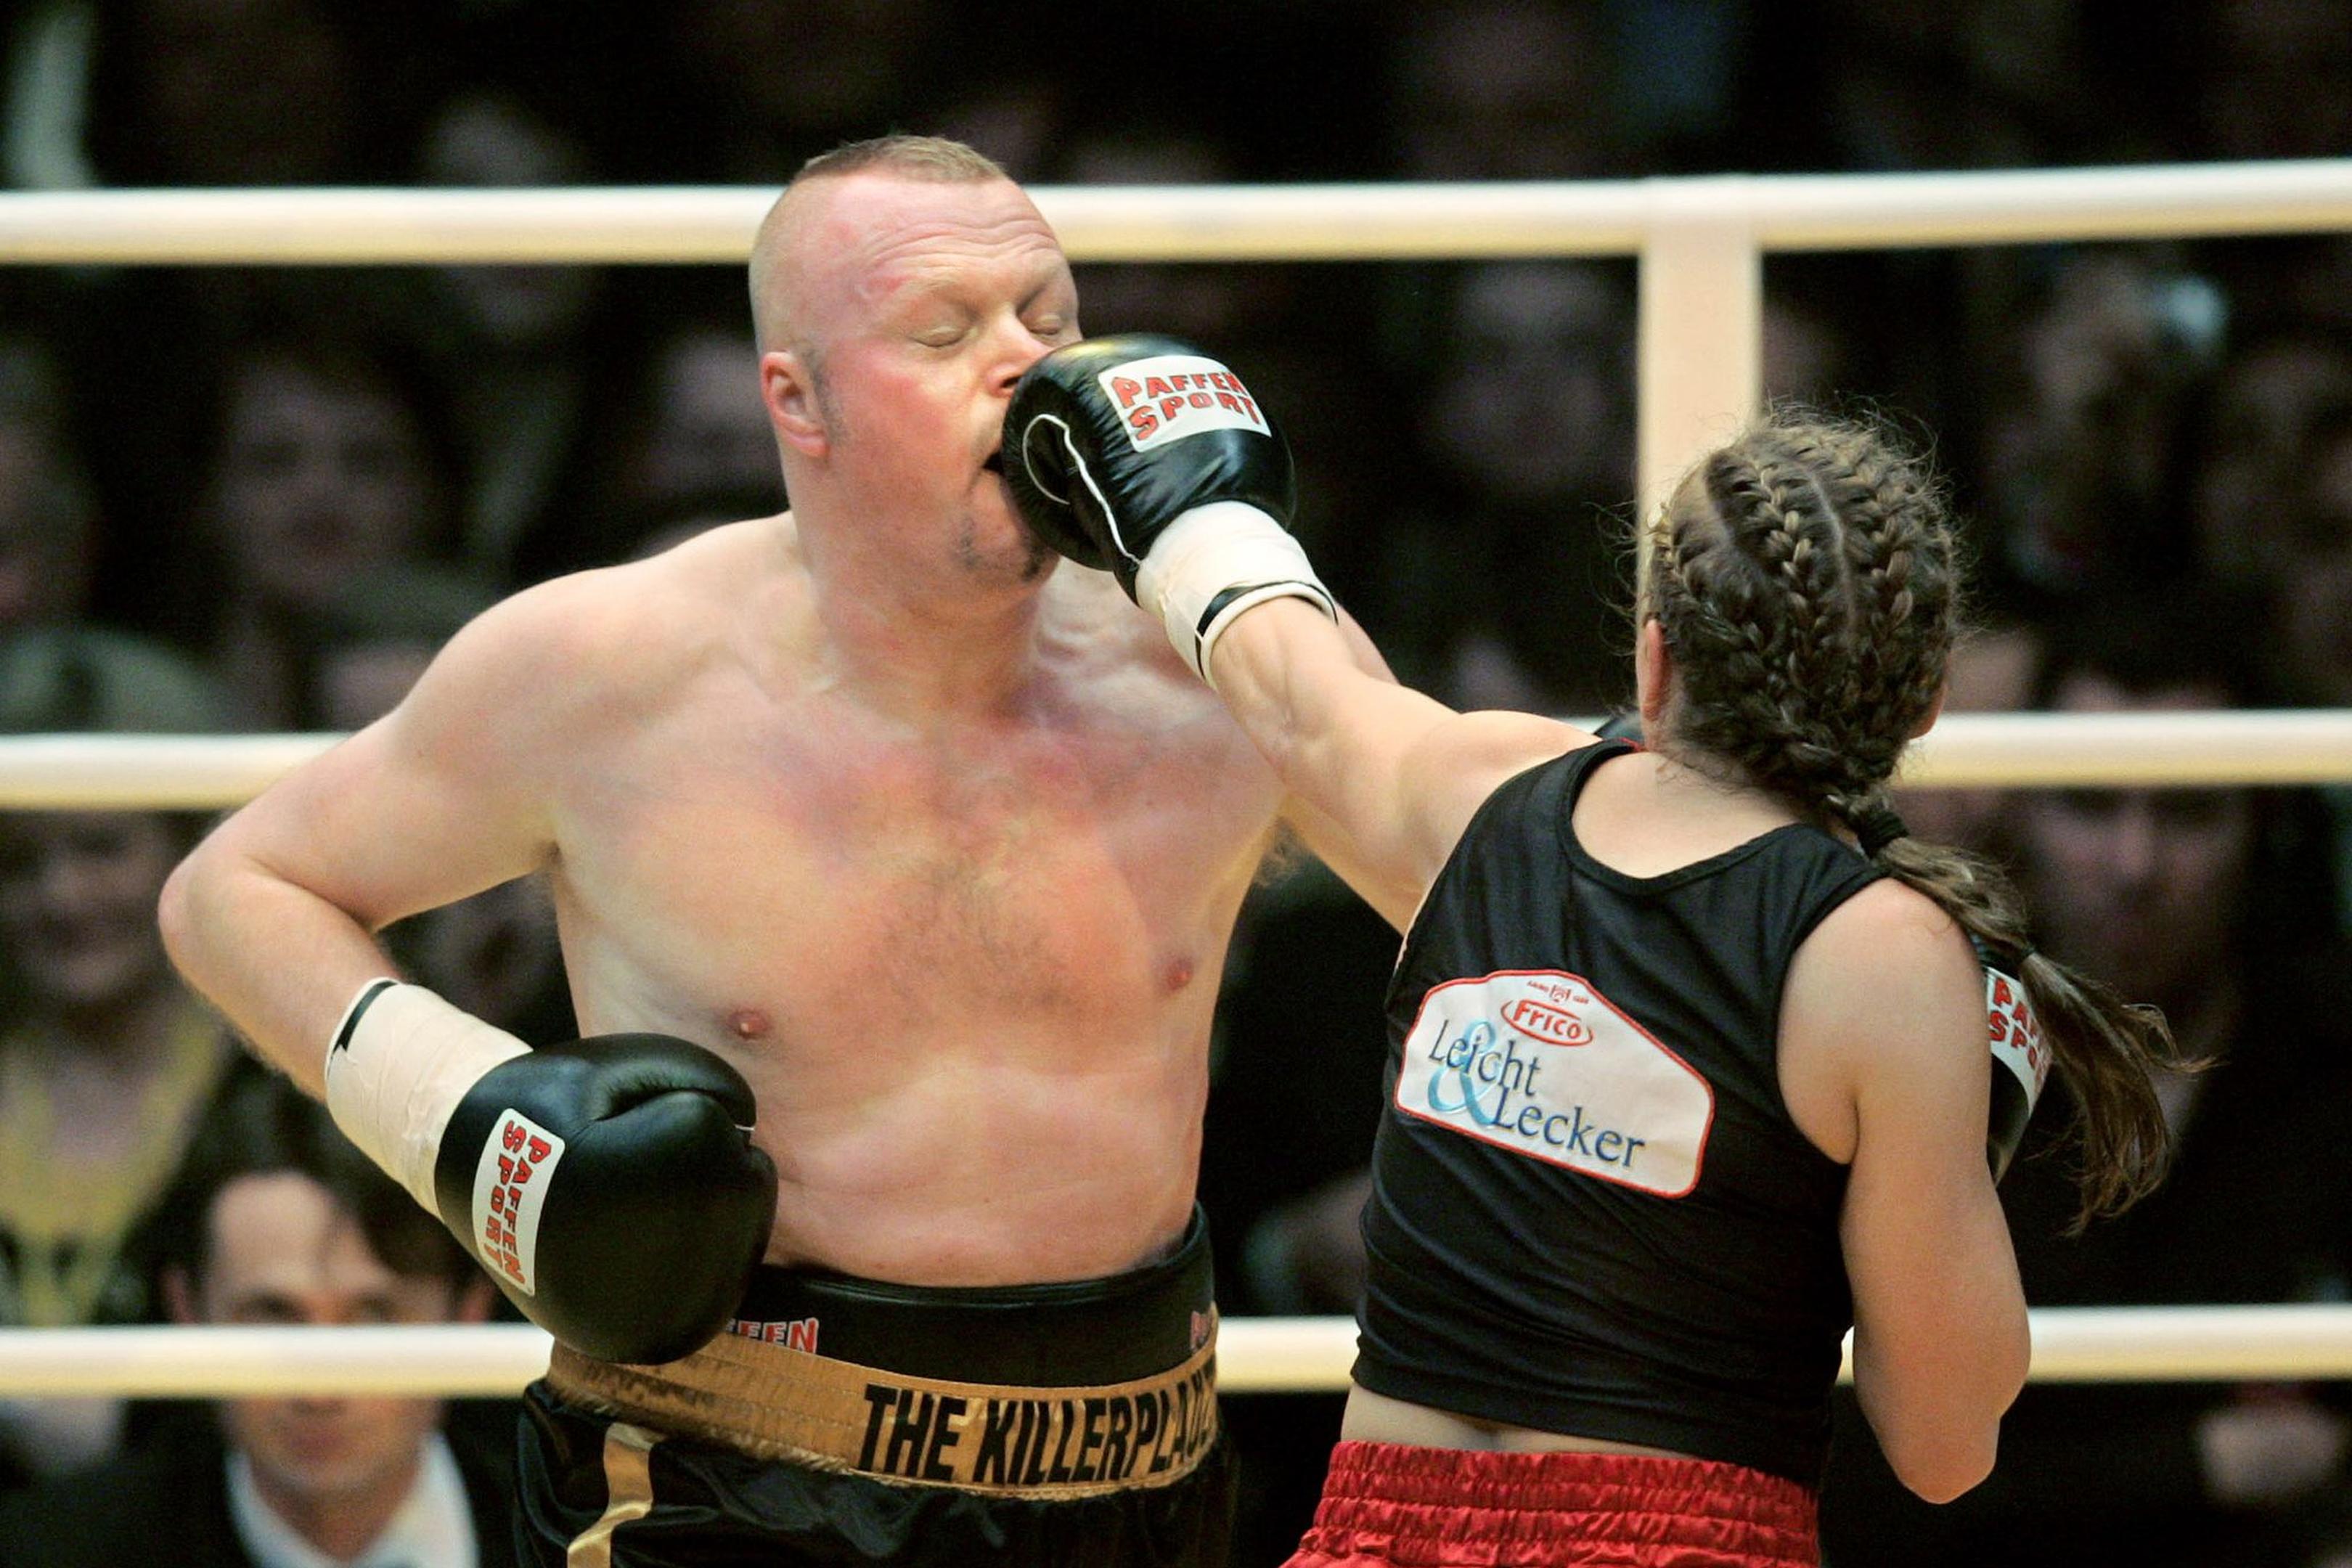 Die ehemalige Boxweltmeisterin Regina Halmich und Fernsehmoderator Stefan Raab beim Fight 2007.